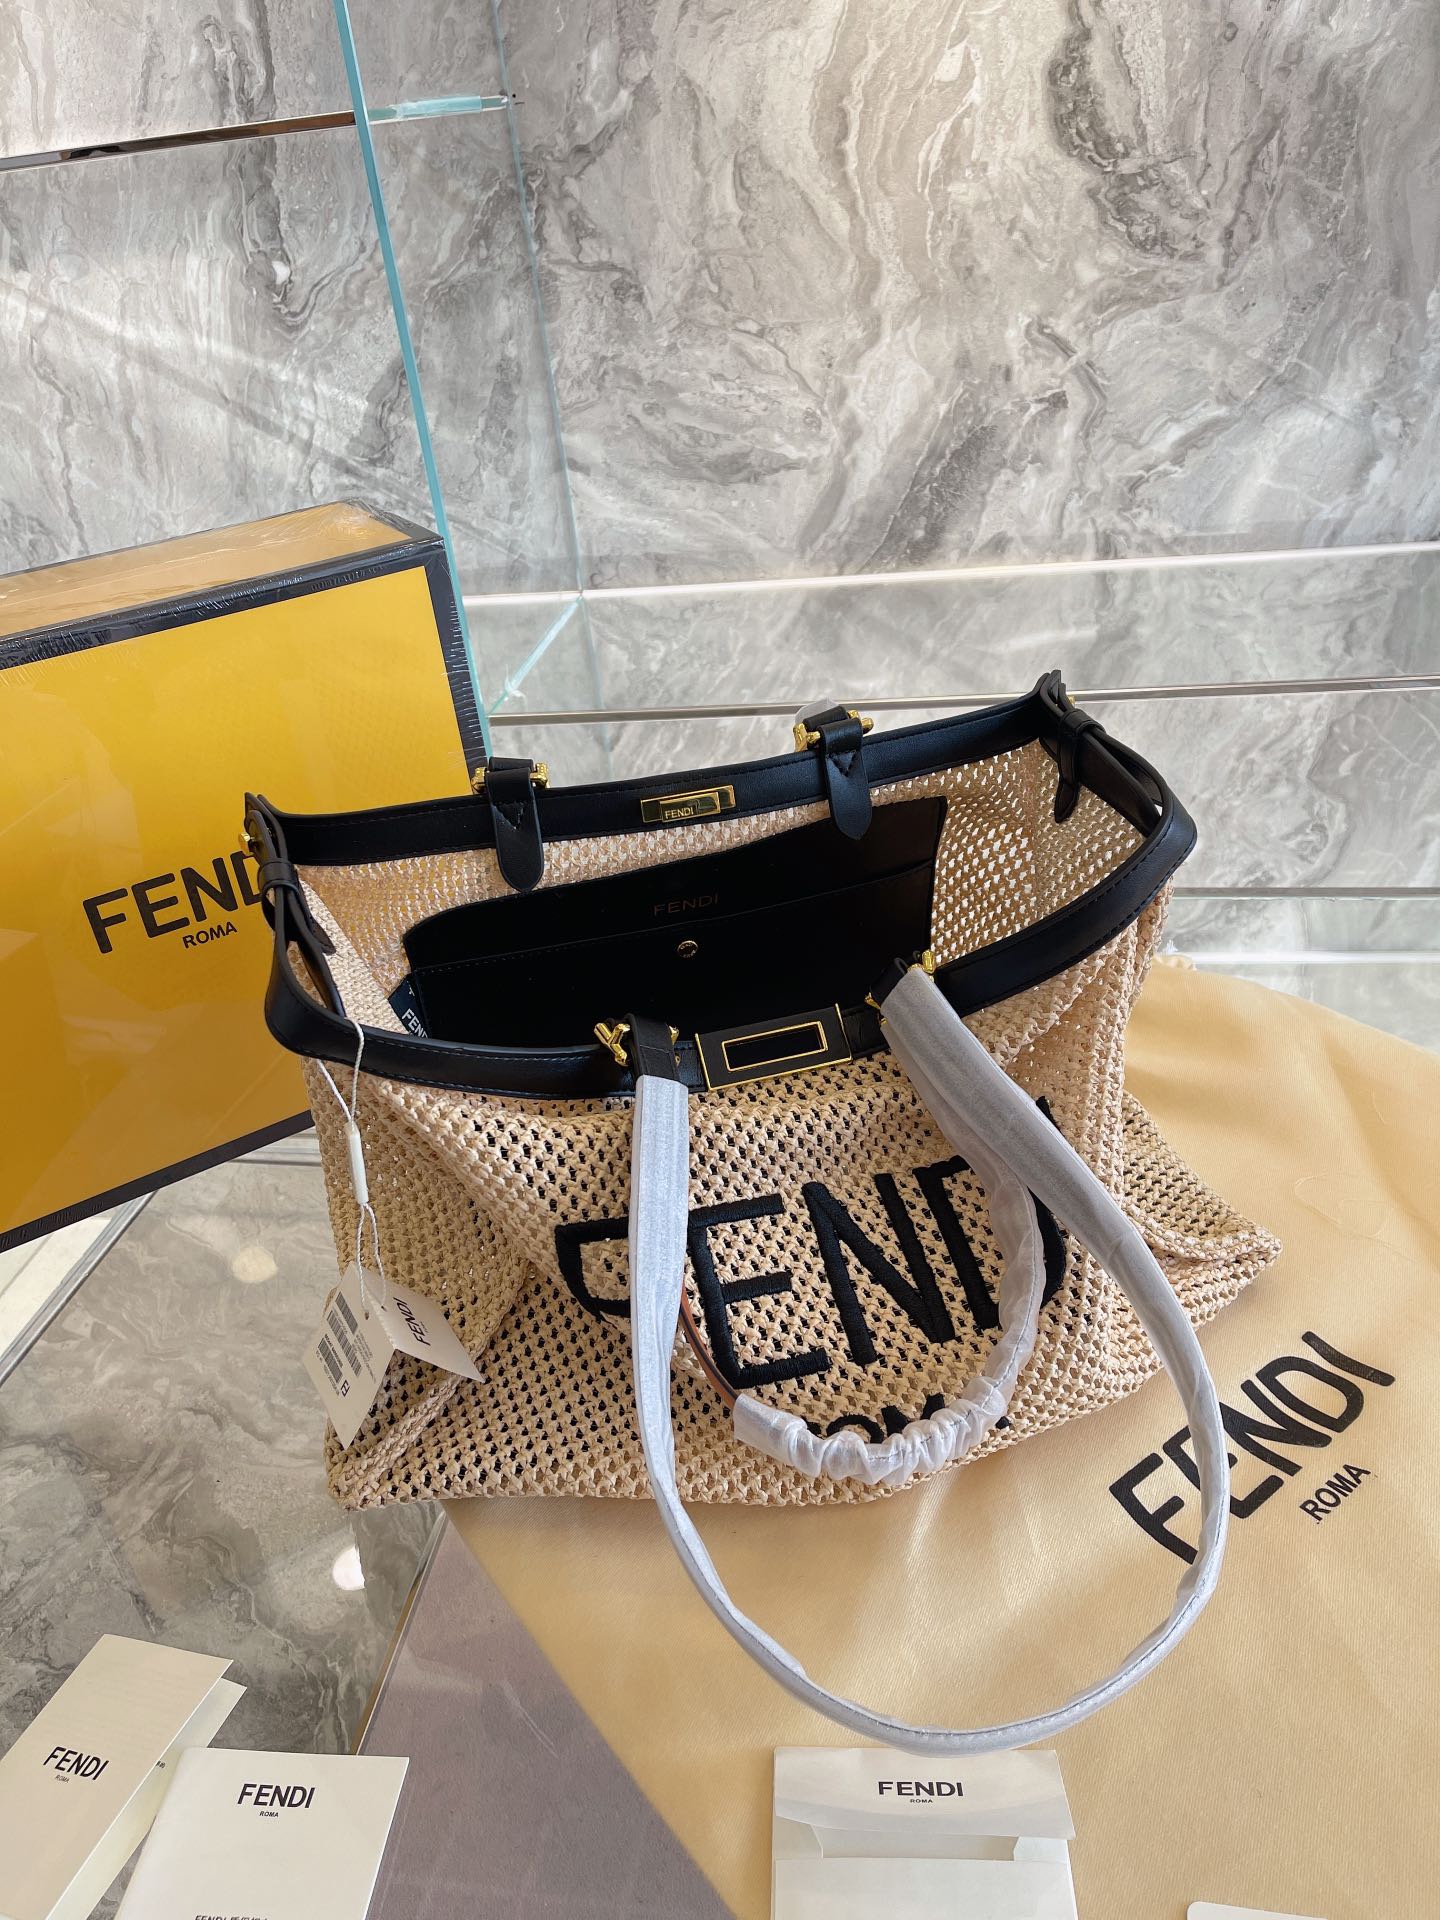 EI - Top Handbags FEI 145